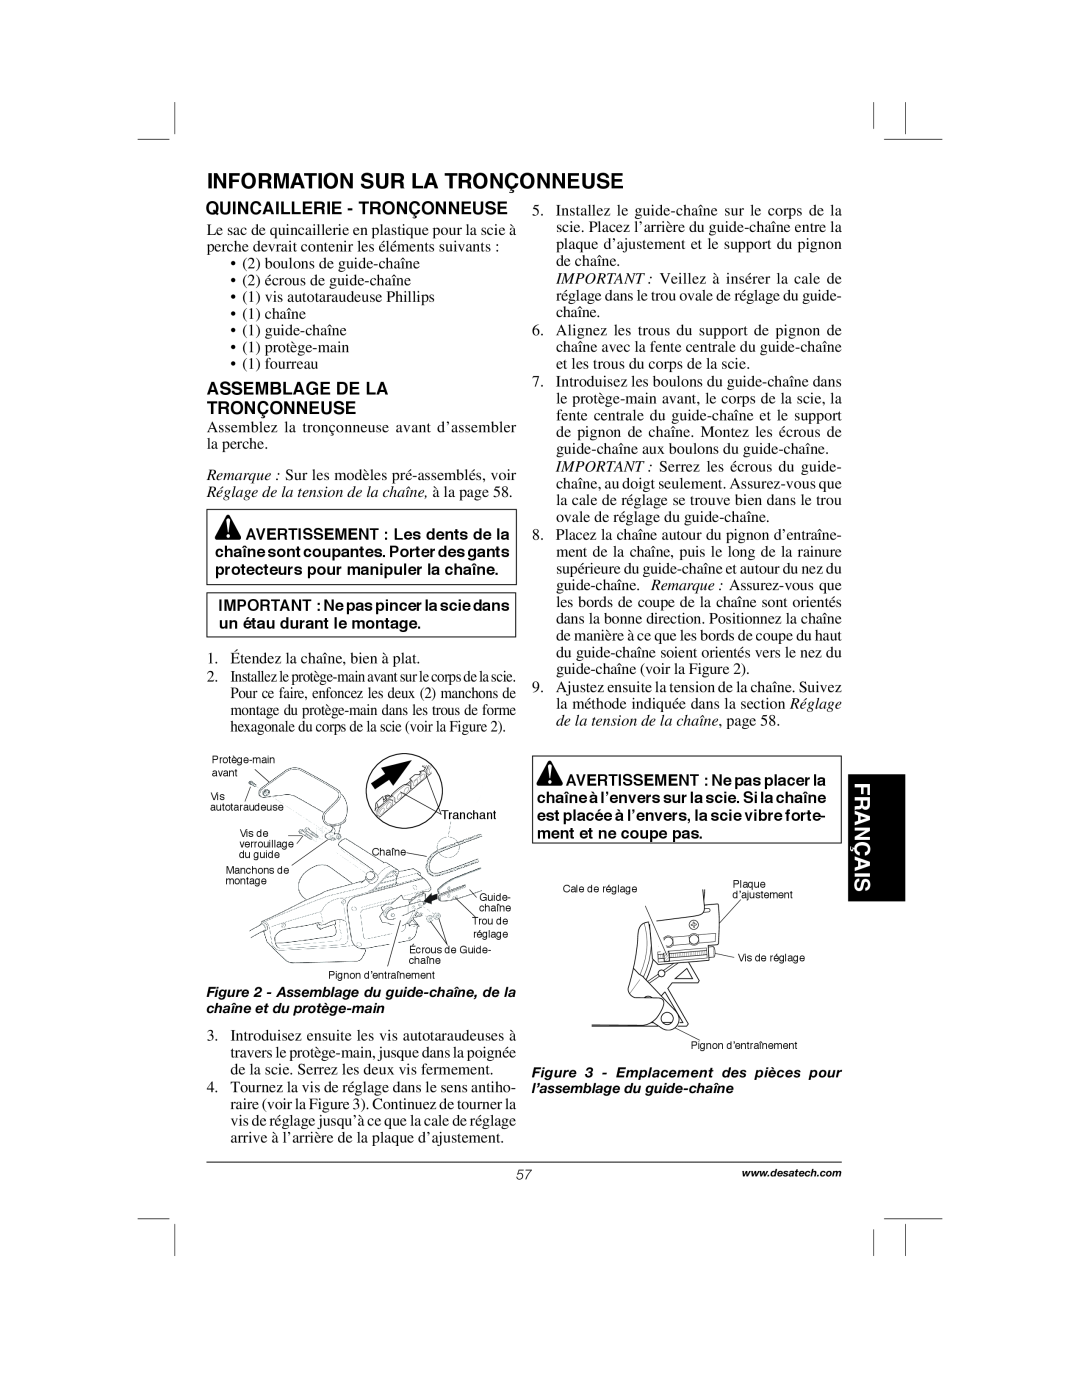 Remington Power Tools 104317, PS1510A manual Information Sur La Tronçonneuse, Français, Quincaillerie - Tronçonneuse 